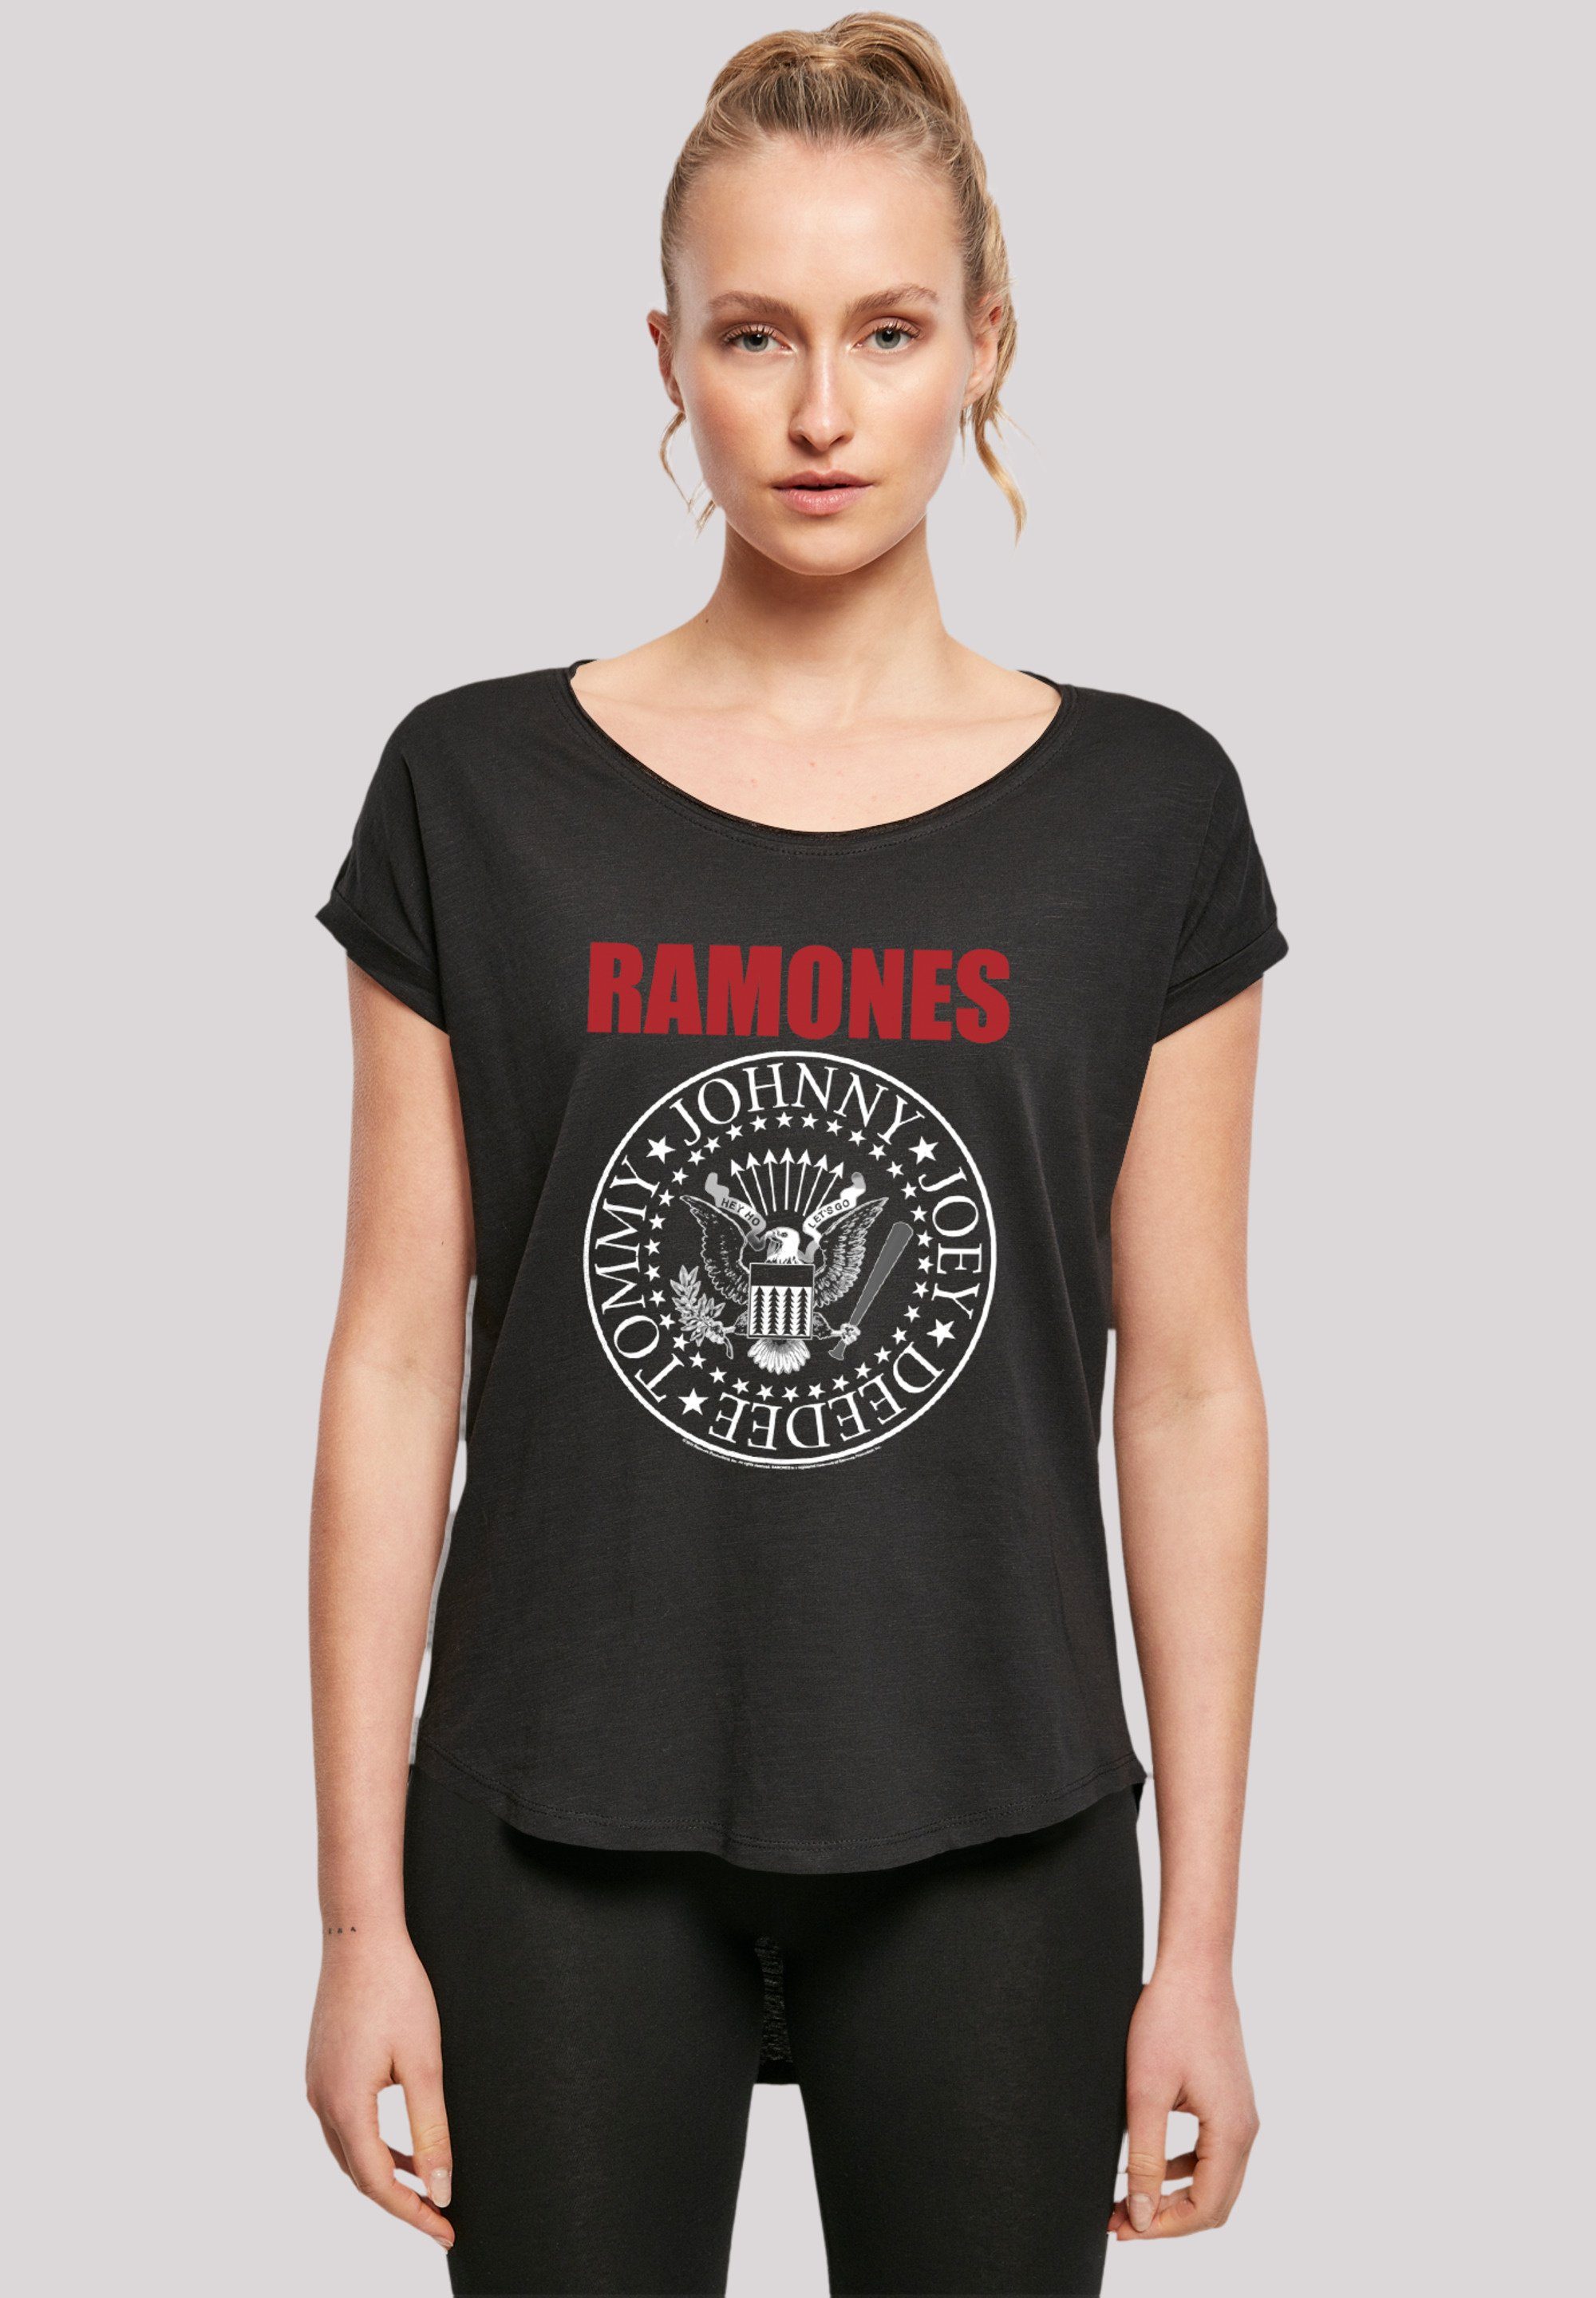 Red T-Shirt Band Text Rock Rock-Musik, Musik Premium geschnittenes Band, Ramones extra Qualität, lang T-Shirt Seal Hinten F4NT4STIC Damen